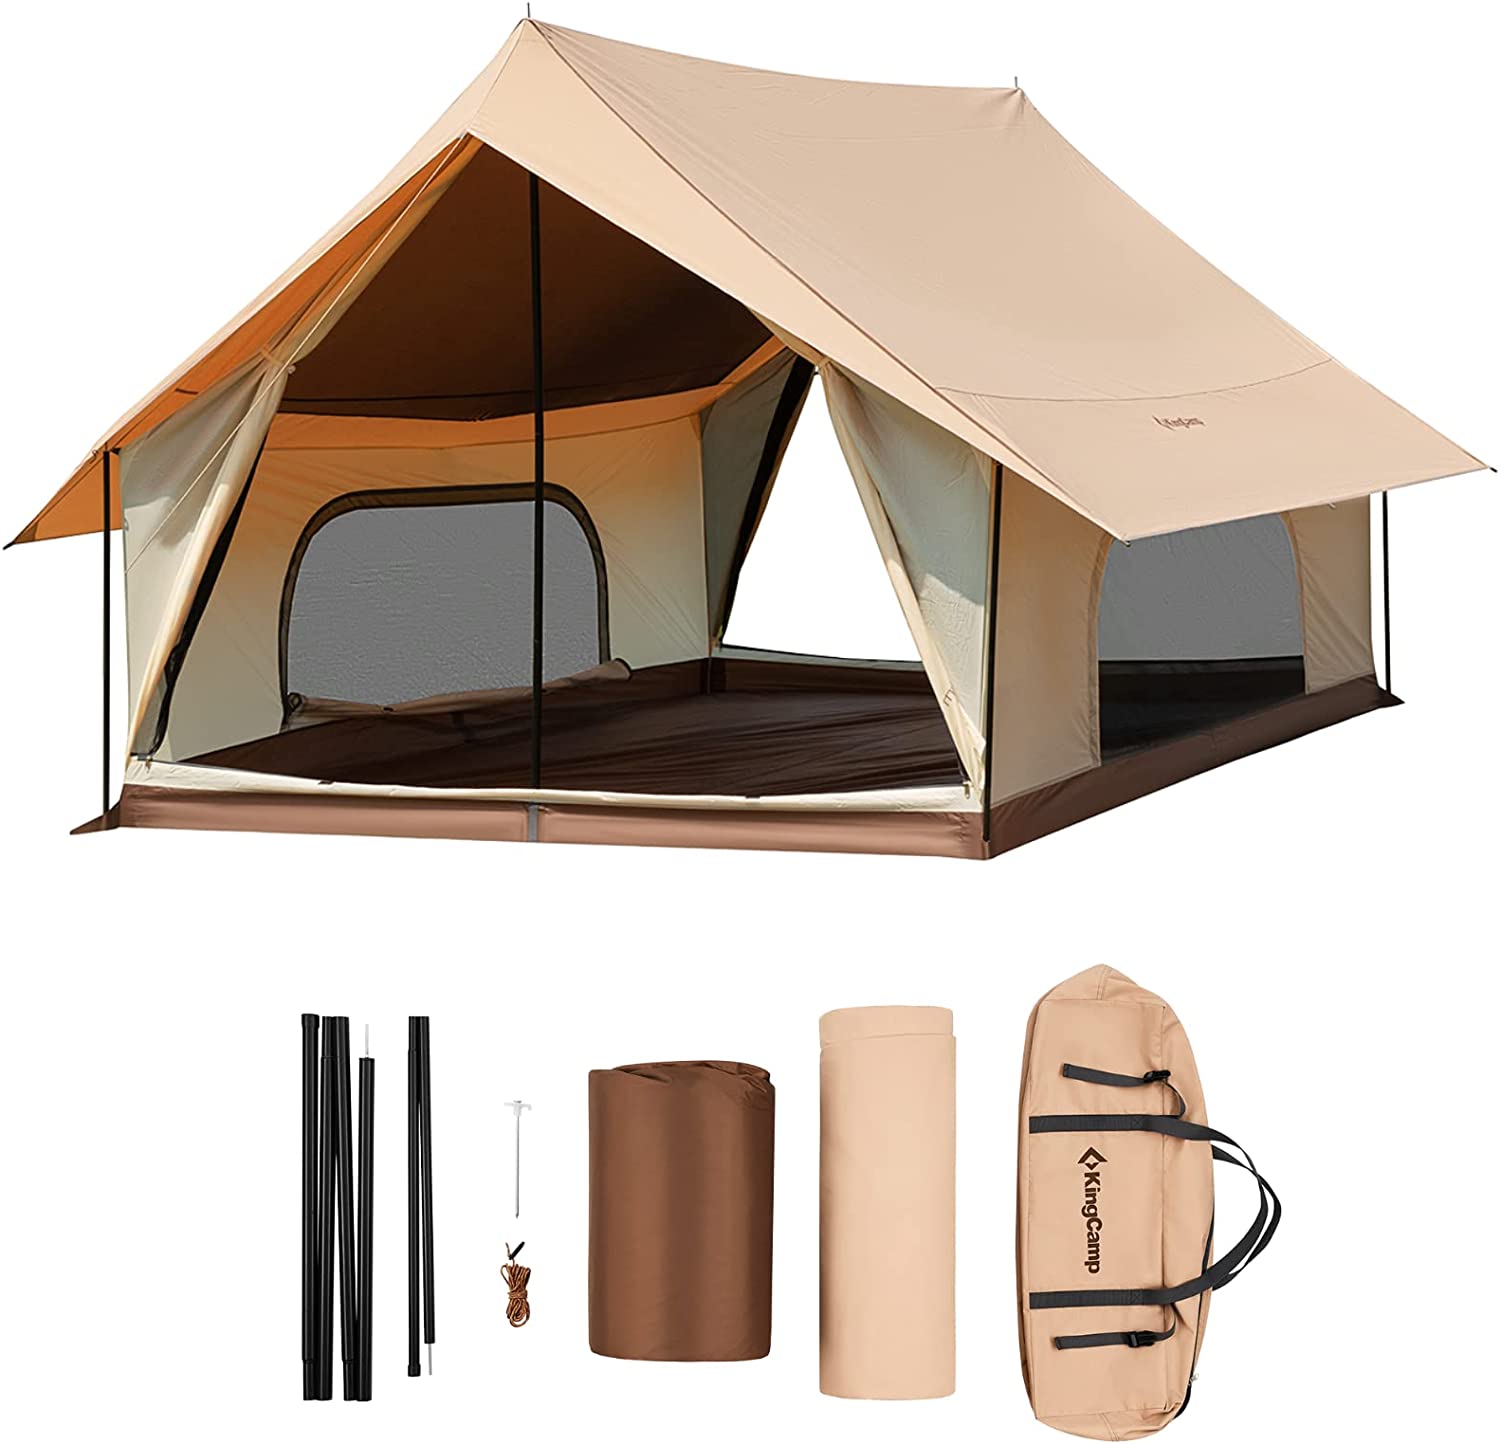 KingCamp tents